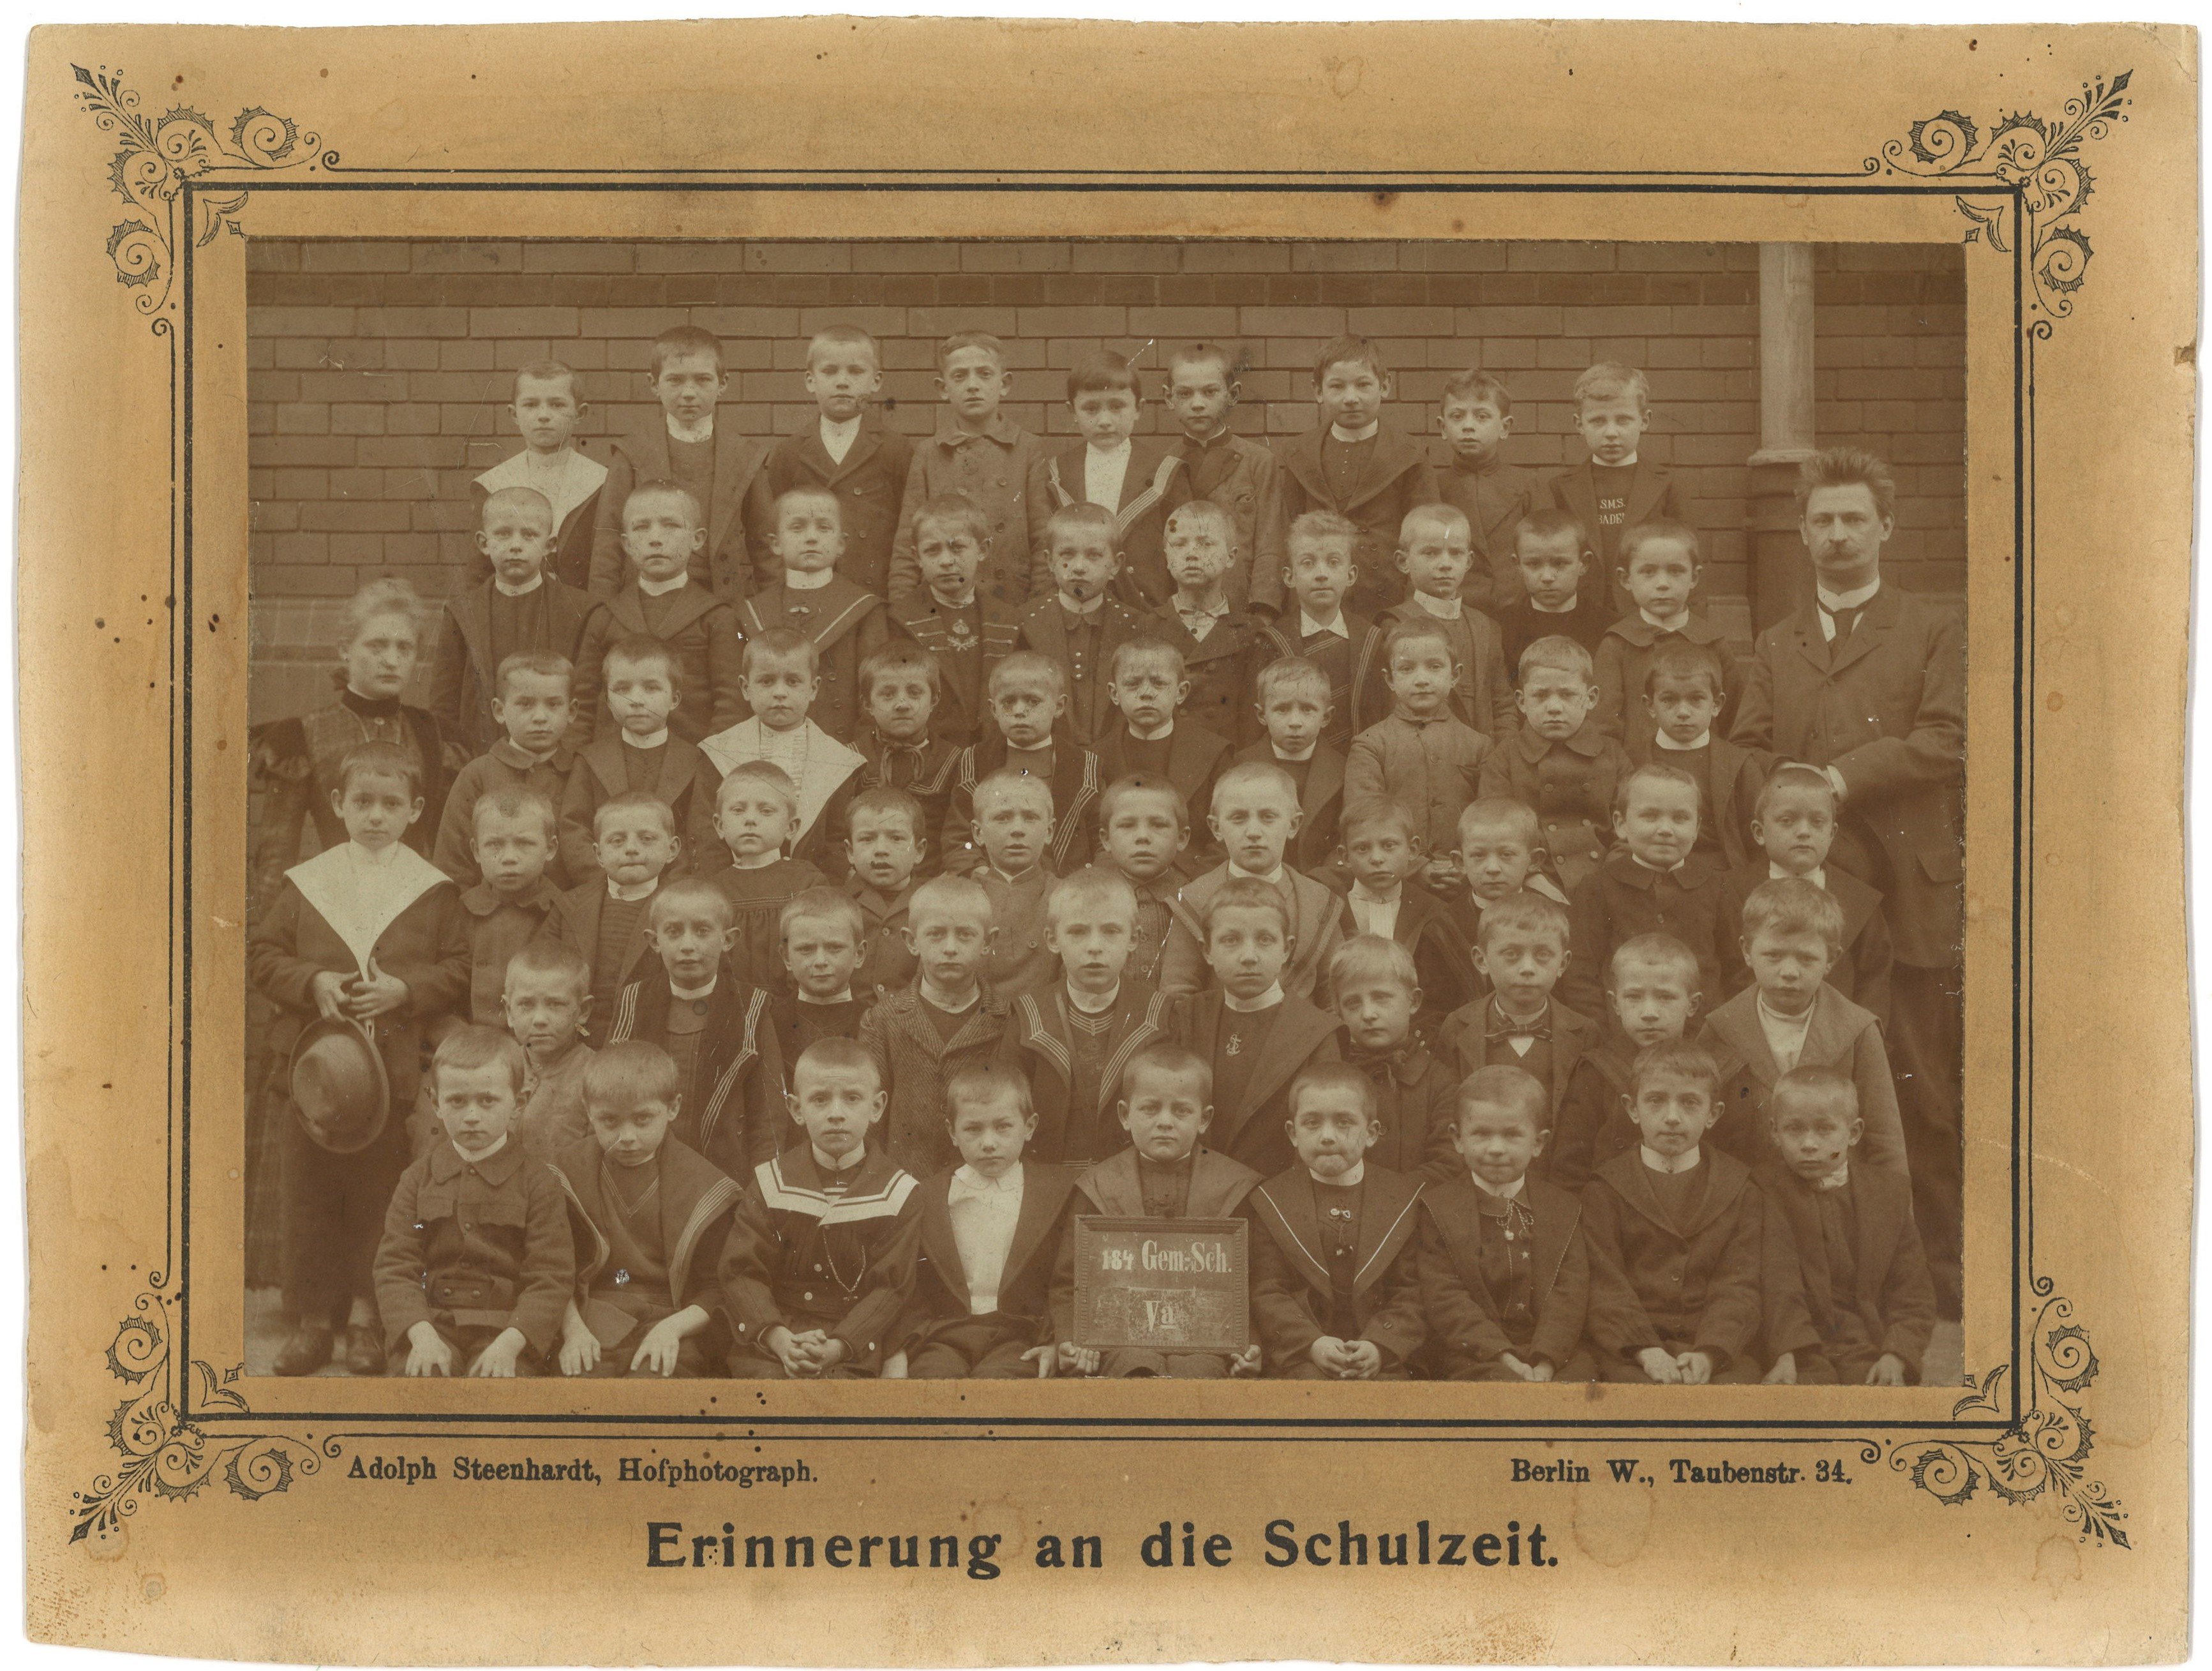 Berlin-Kreuzberg: Klassenfoto der 184. Gemeindeschule um 1900 (Landesgeschichtliche Vereinigung für die Mark Brandenburg e.V., Archiv CC BY)